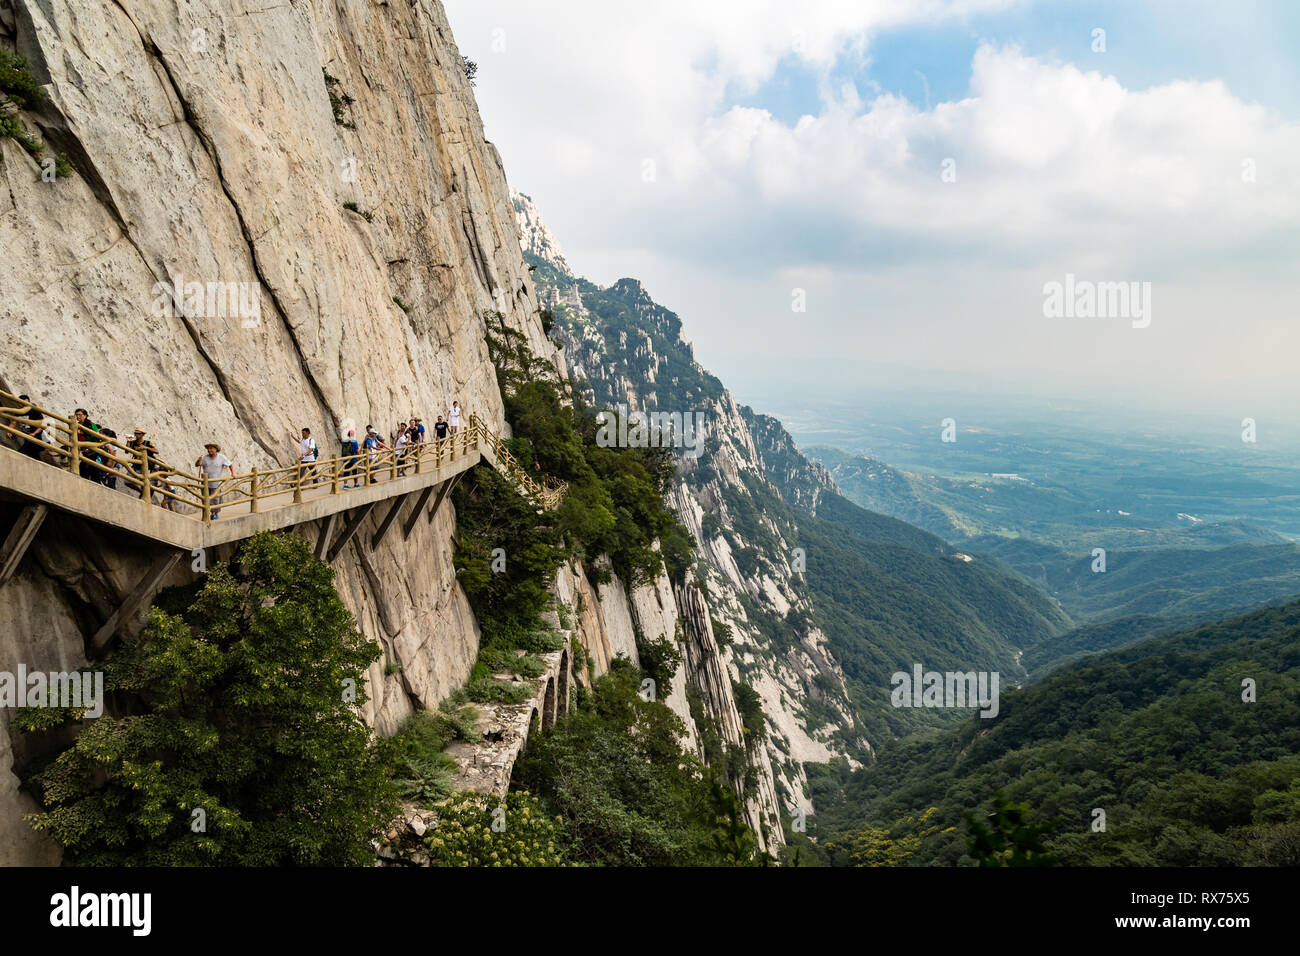 Luglio 2016, Dengfeng, Cina. I turisti a piedi sul Monte Songshan, il più alto delle 5 montagne sacre della Cina dedicato al Taoismo che si erge sopra la Foto Stock